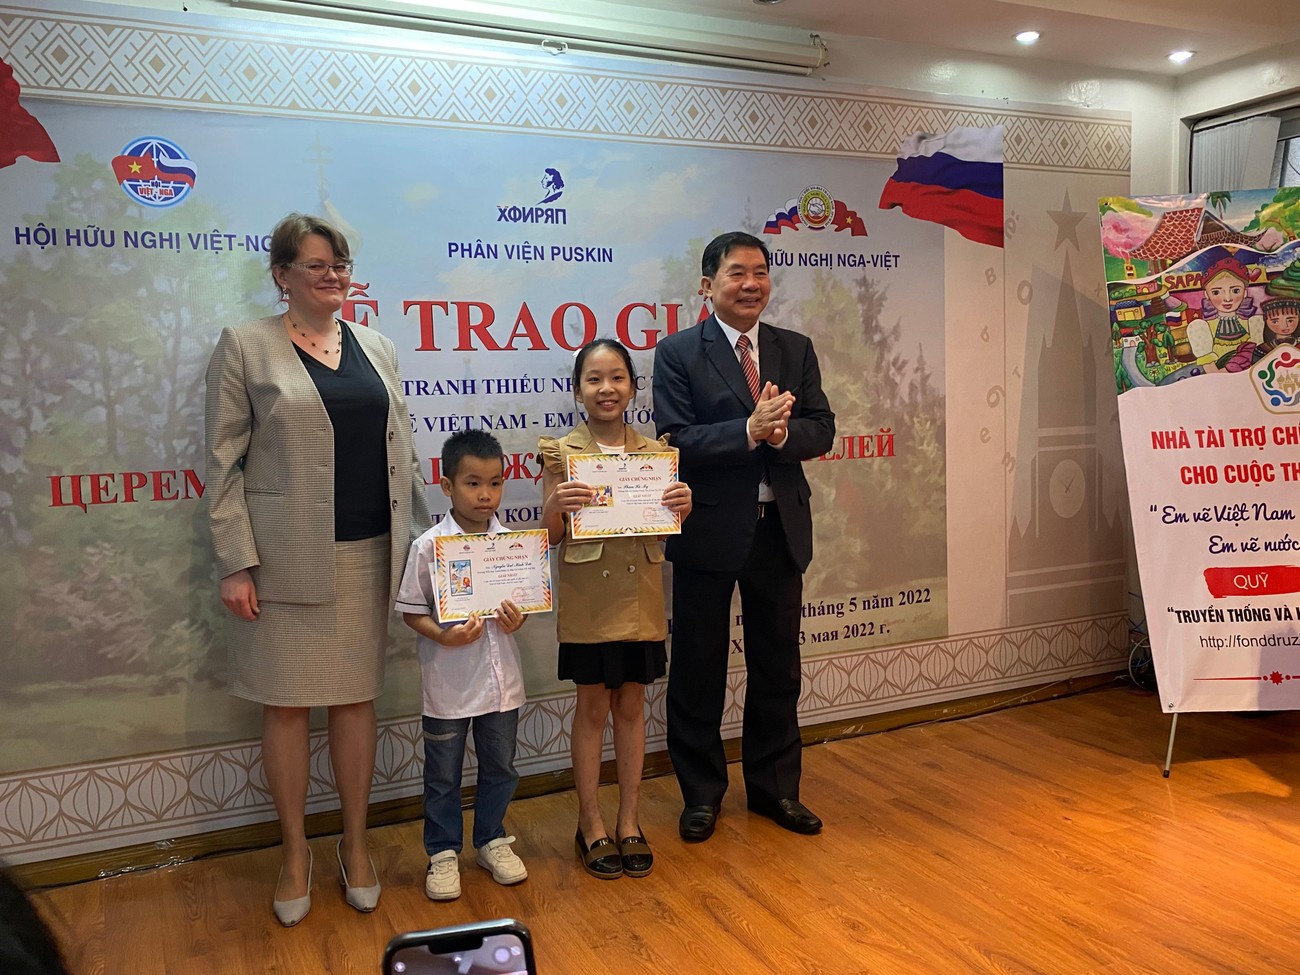 Trao 16 giải thưởng cho học sinh vẽ tranh về tình đoàn kết Việt - Nga ảnh 3